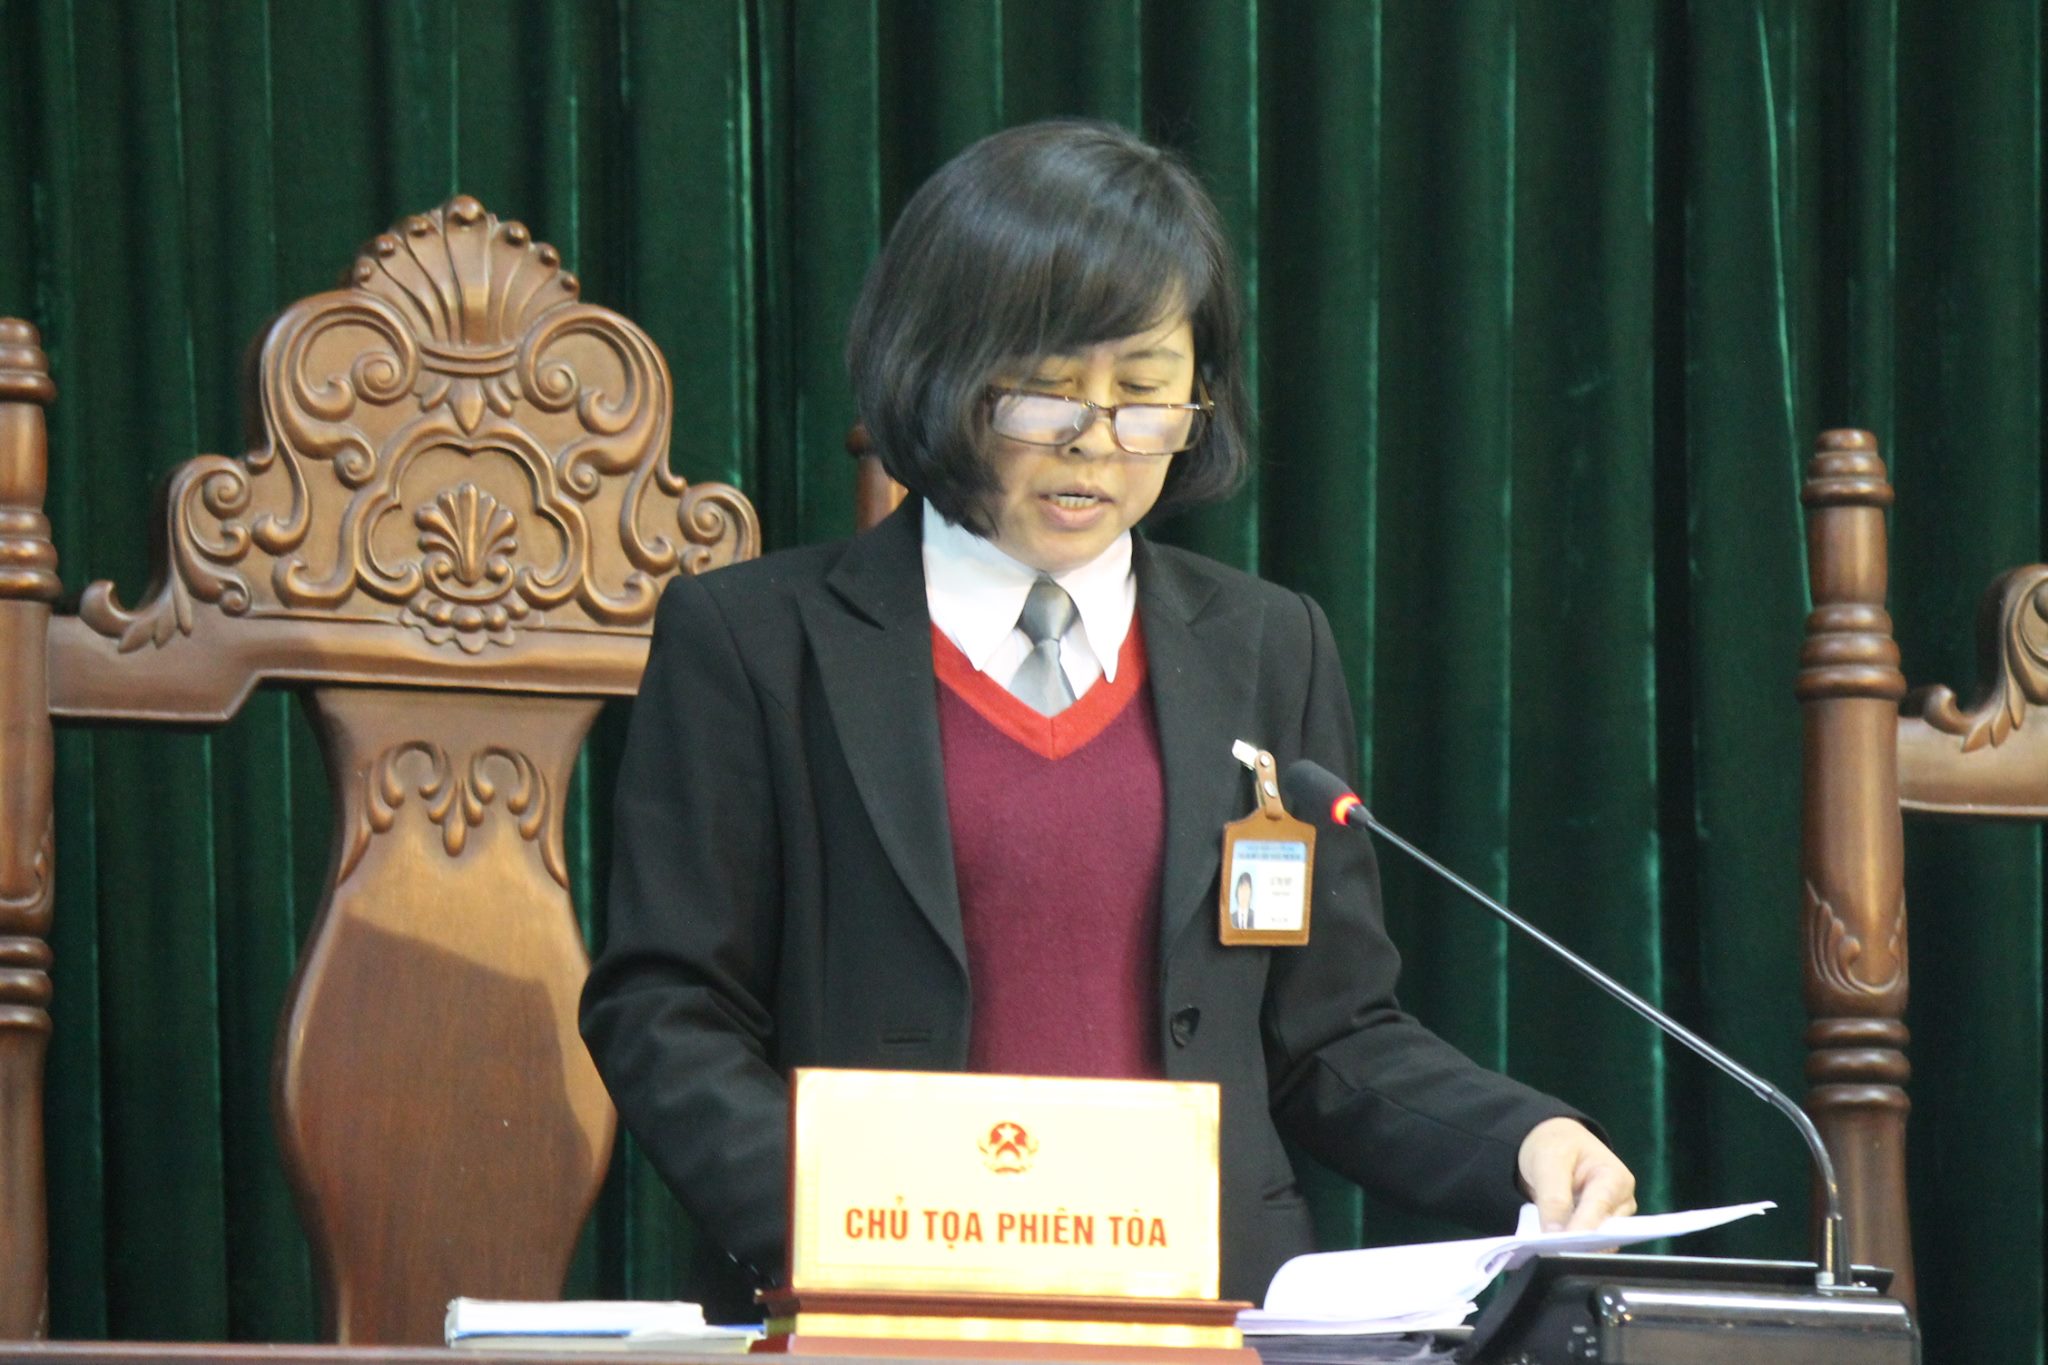 Thẩm phán Lê Thị Hợp đọc bản án dành cho 2 bị cáo Nguyễn Mạnh Tường và Đào Quang Khánh